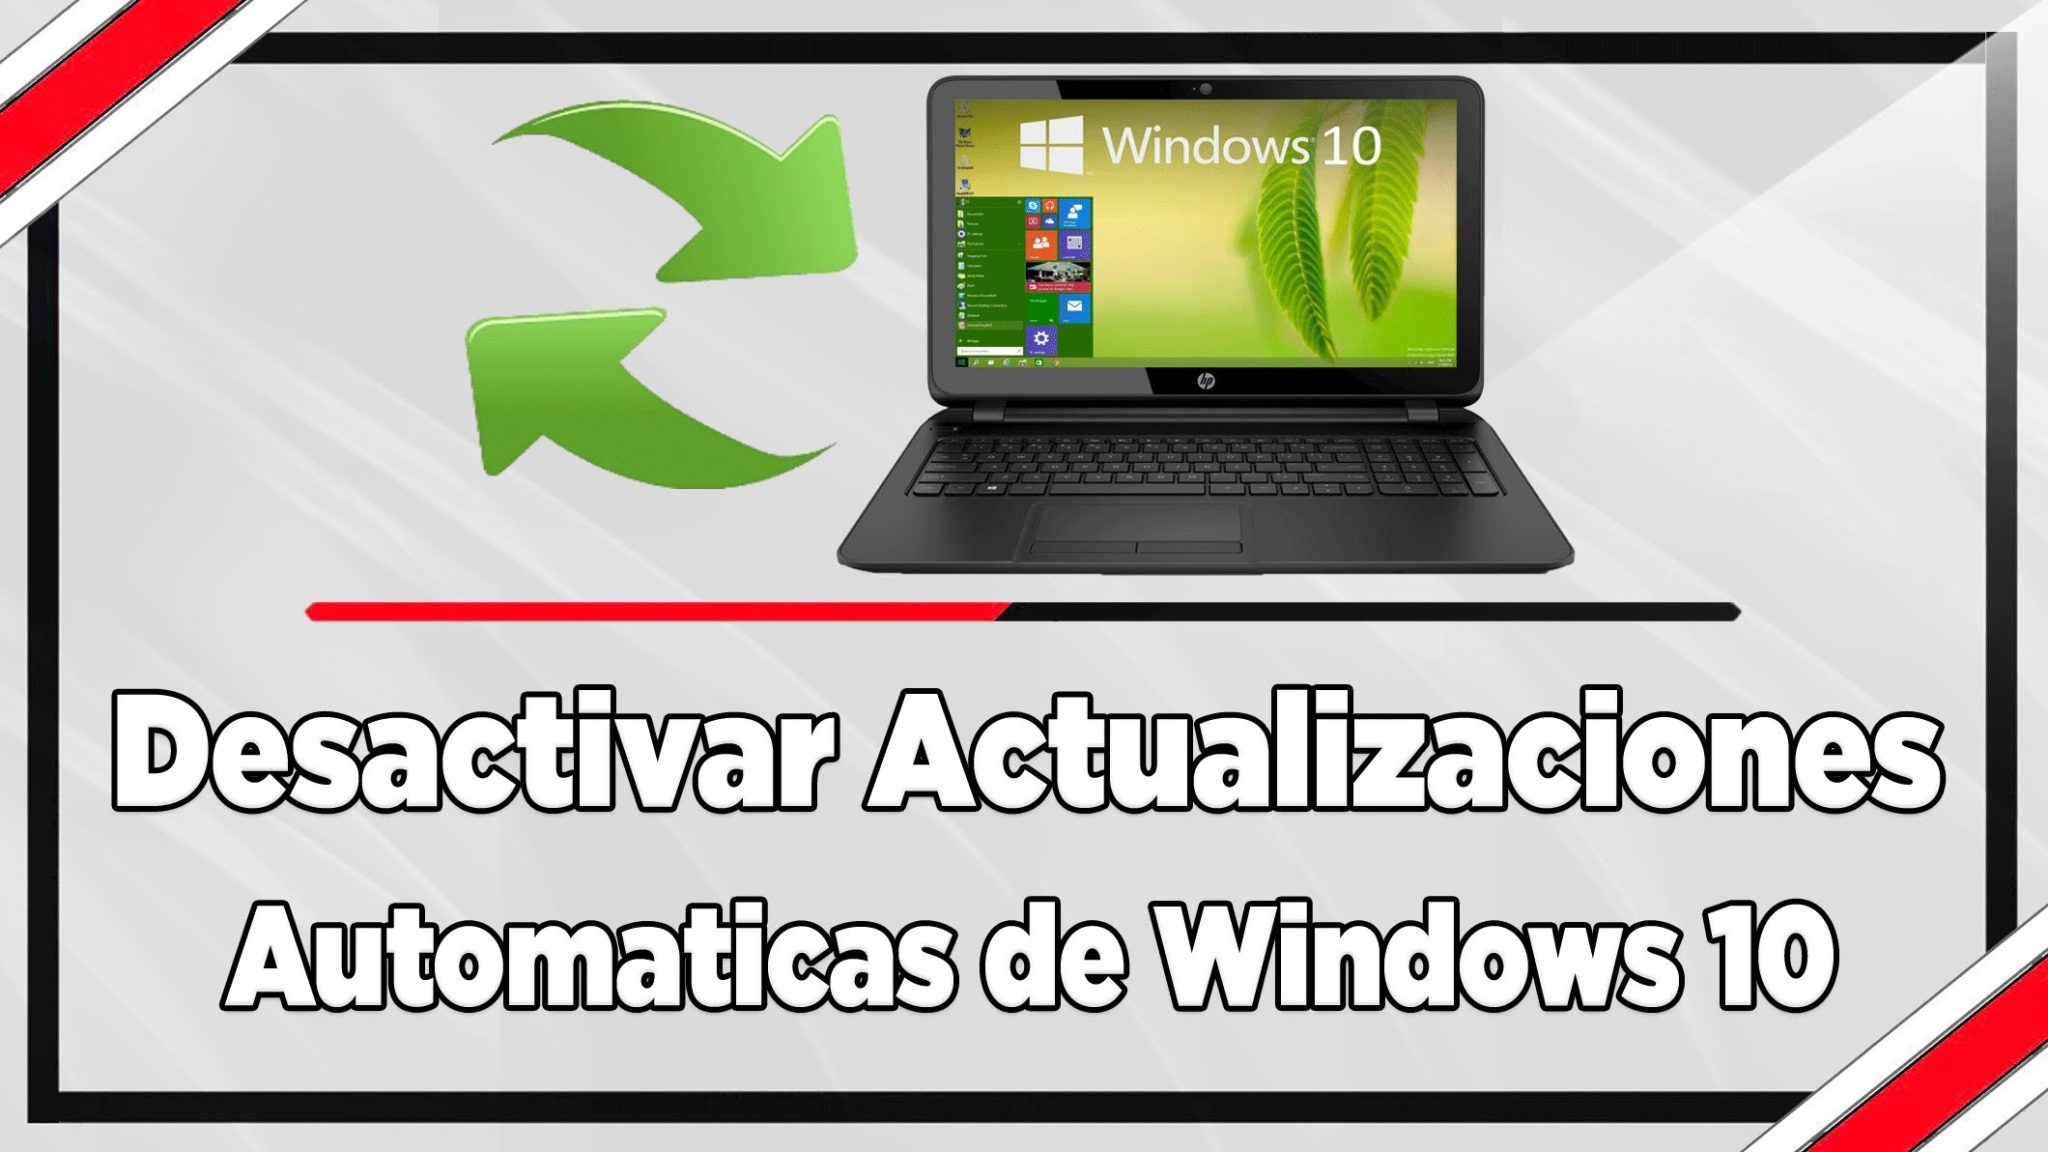 actualizaciones windows 10 - BLOG - Desactivar las actualizaciones automáticas de Windows 10